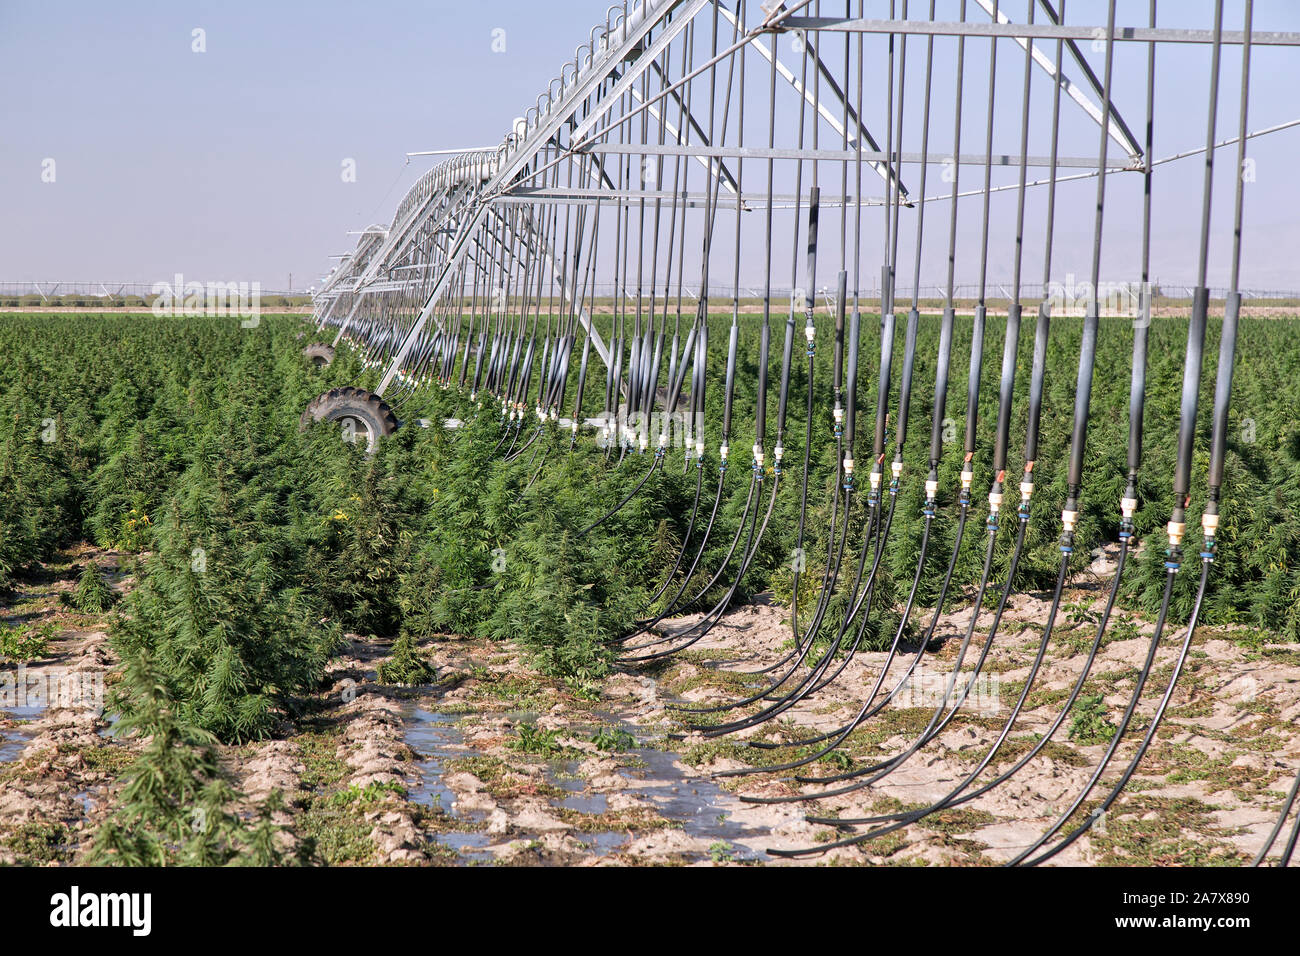 Souche de chanvre industriel 'Lime givrée', cannabis sativa, récolte en maturation, système d'irrigation linéaire auto-propulsée. Banque D'Images